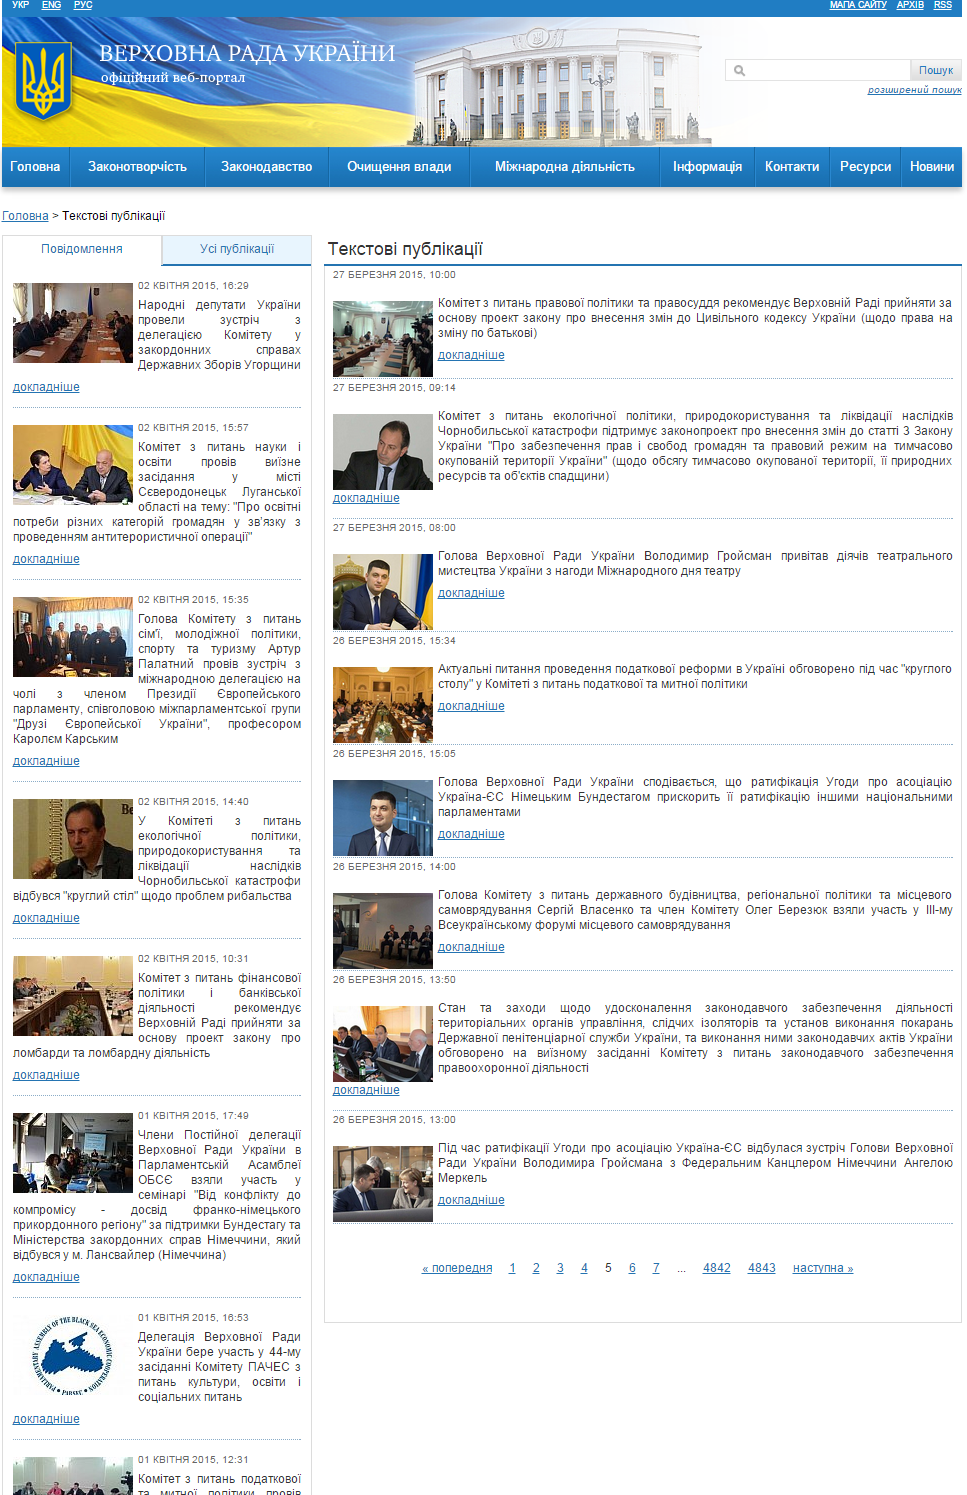 http://iportal.rada.gov.ua/news/page/5